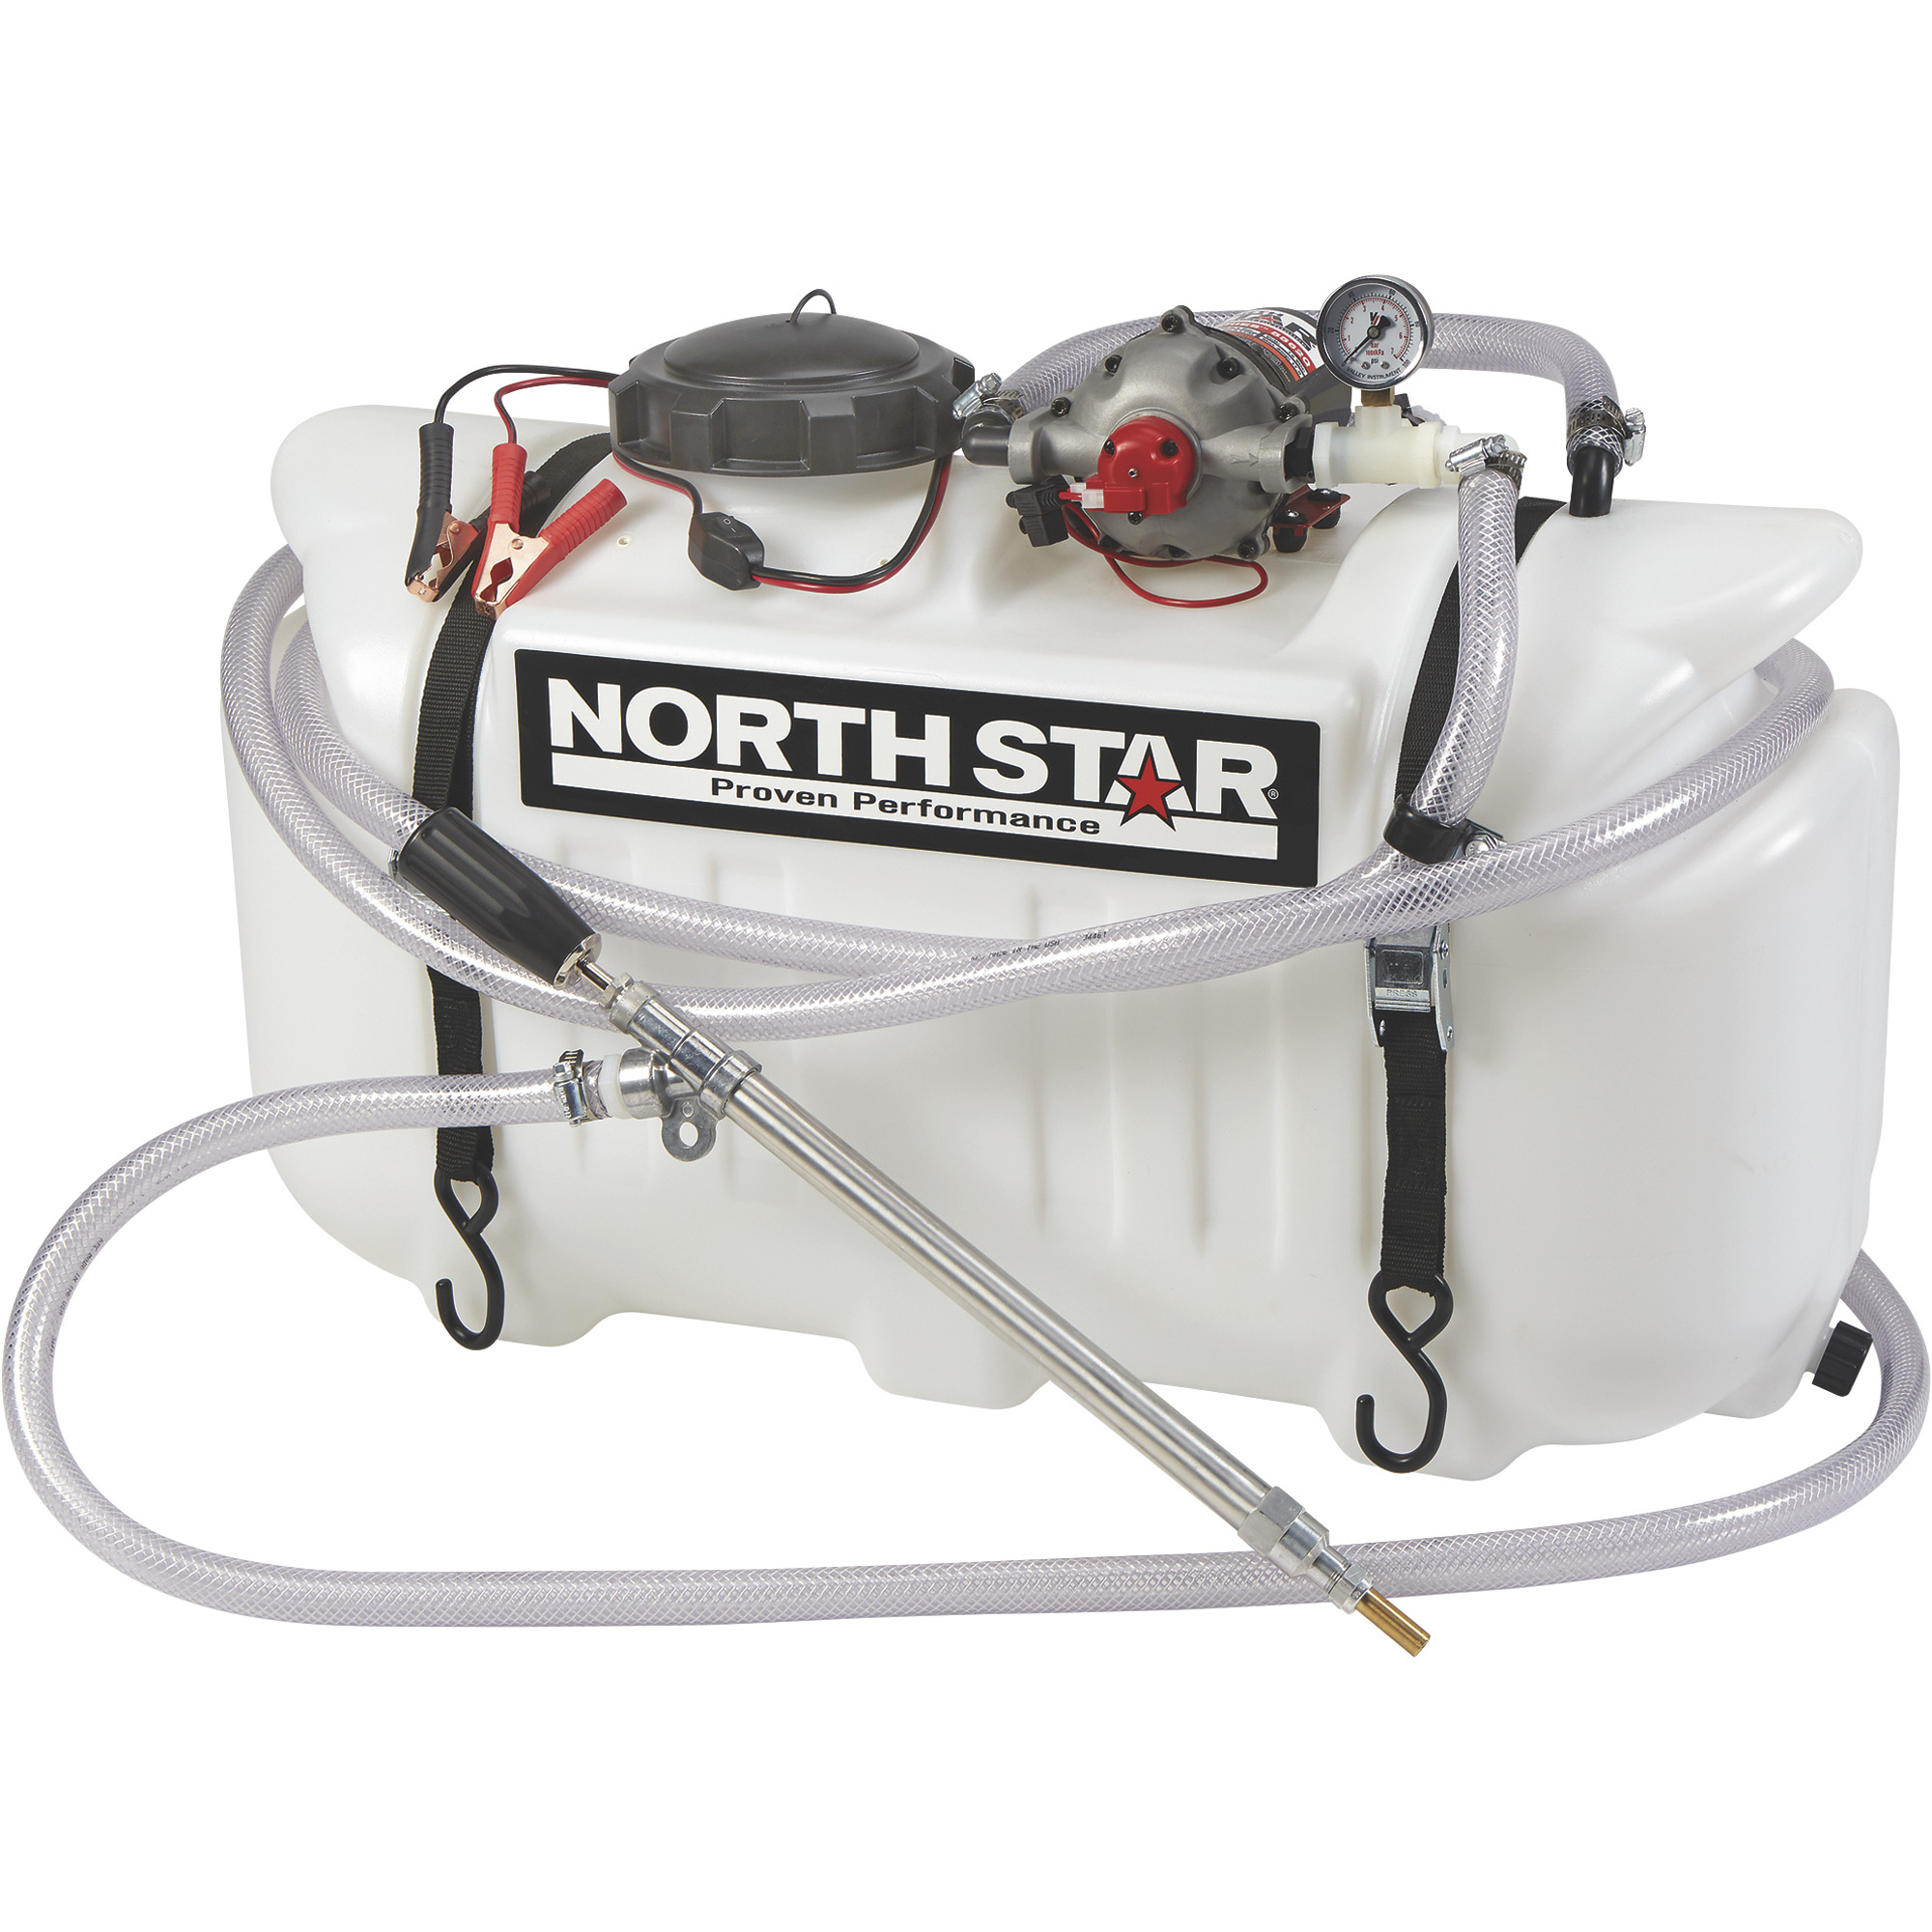 NorthStar ATV Tree Sprayer â 26-Gallon Capacity, 5.5 GPM, 12 Volts